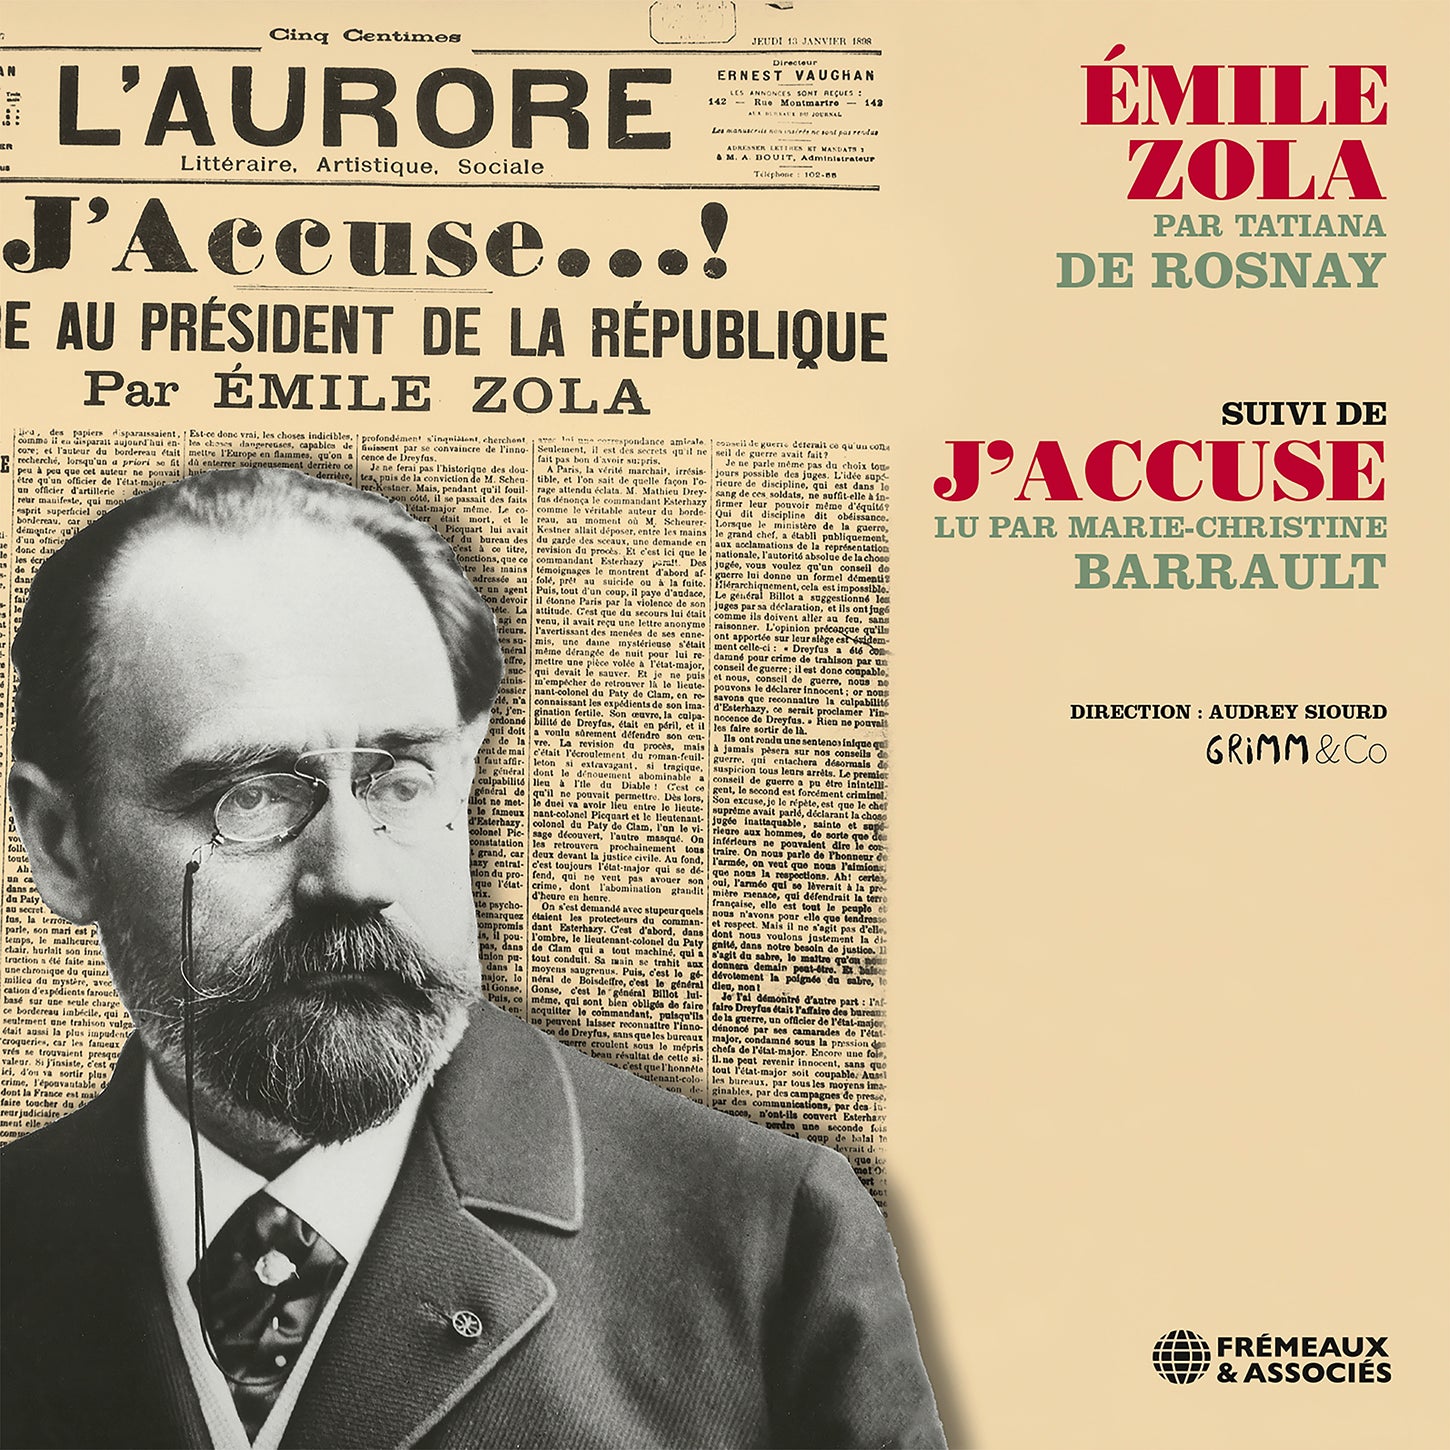 Emile Zola par Tatiana De Rosnay, suivi de "J’Accuse" lu par Marie-Christine Barrault